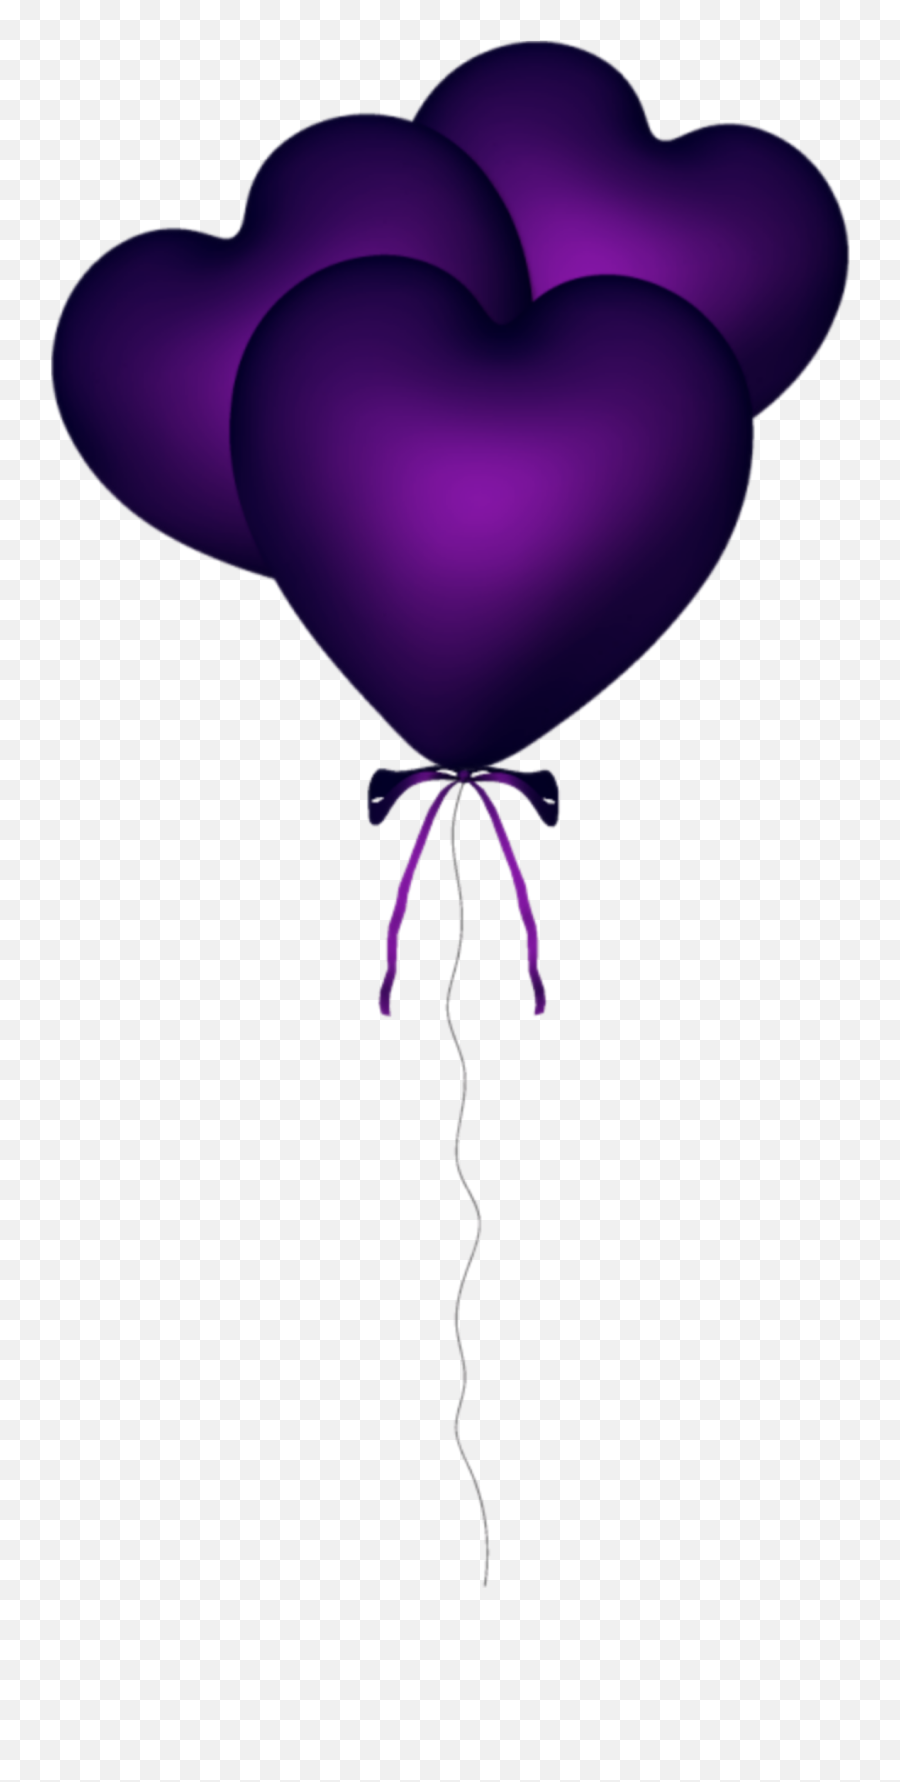 Purple Balloon Balloons Heart Hearts - Purple Heart Balloons Cartoon Emoji,Heart Emoji Balloons